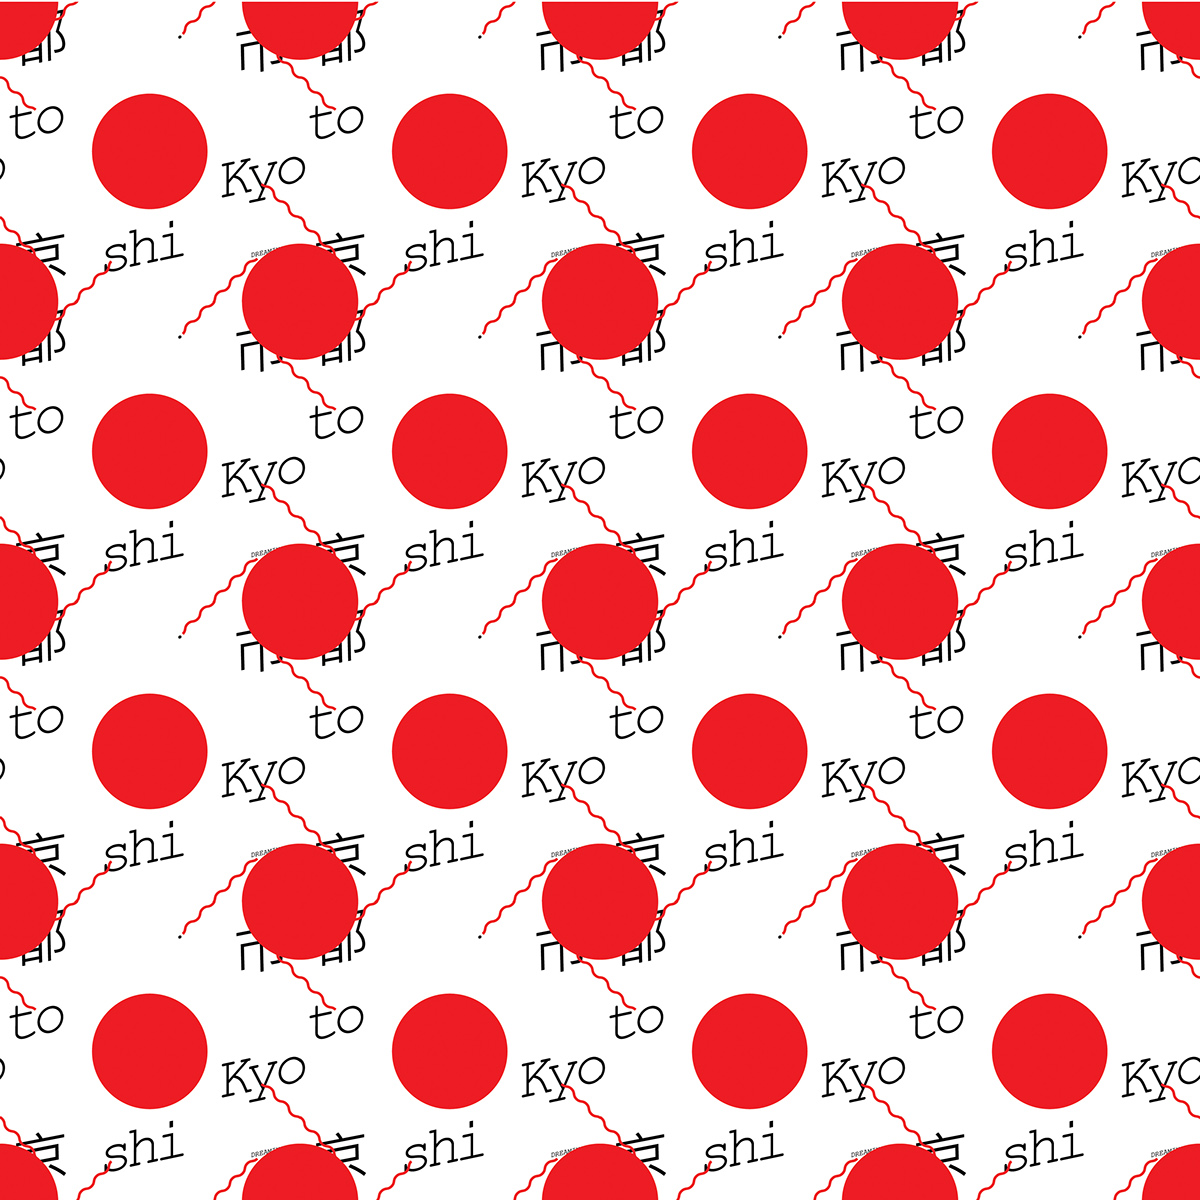 kyoto pattern